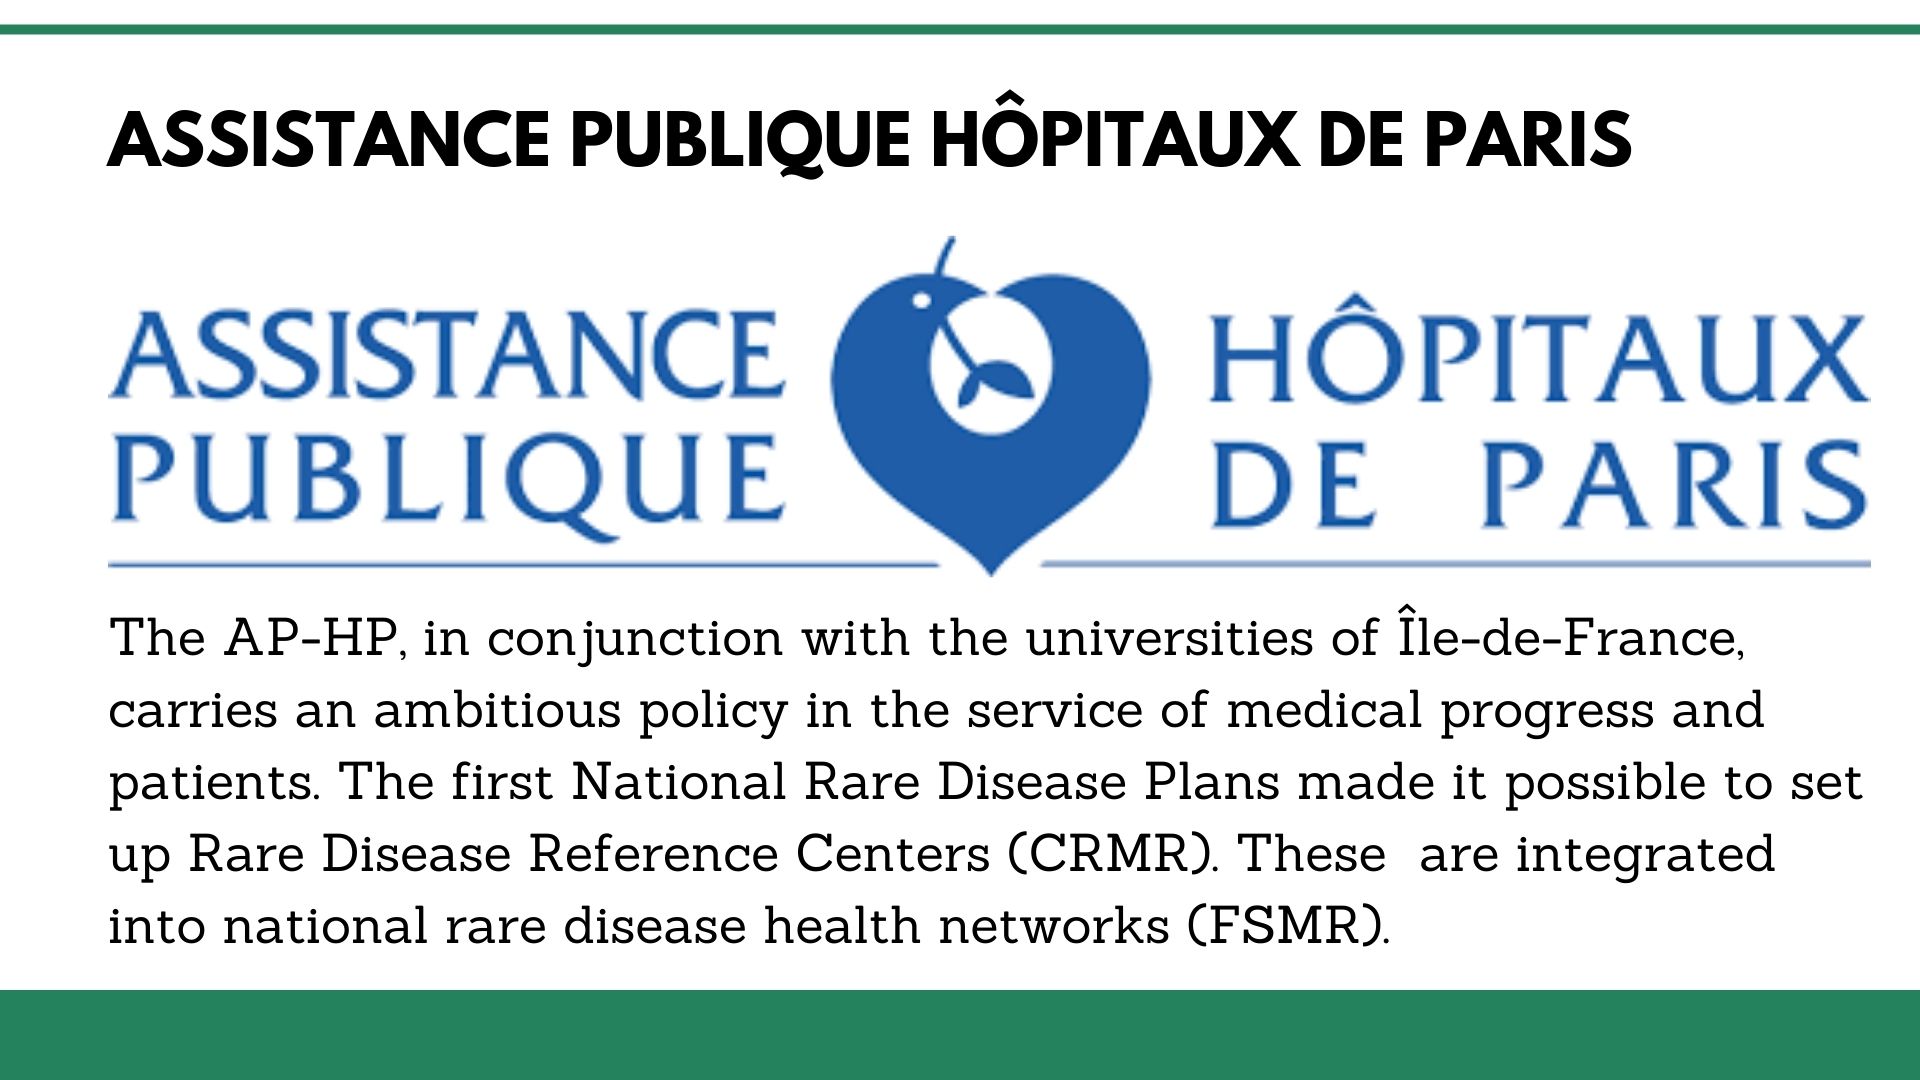 Assistance Publique Hôpitaux de Paris